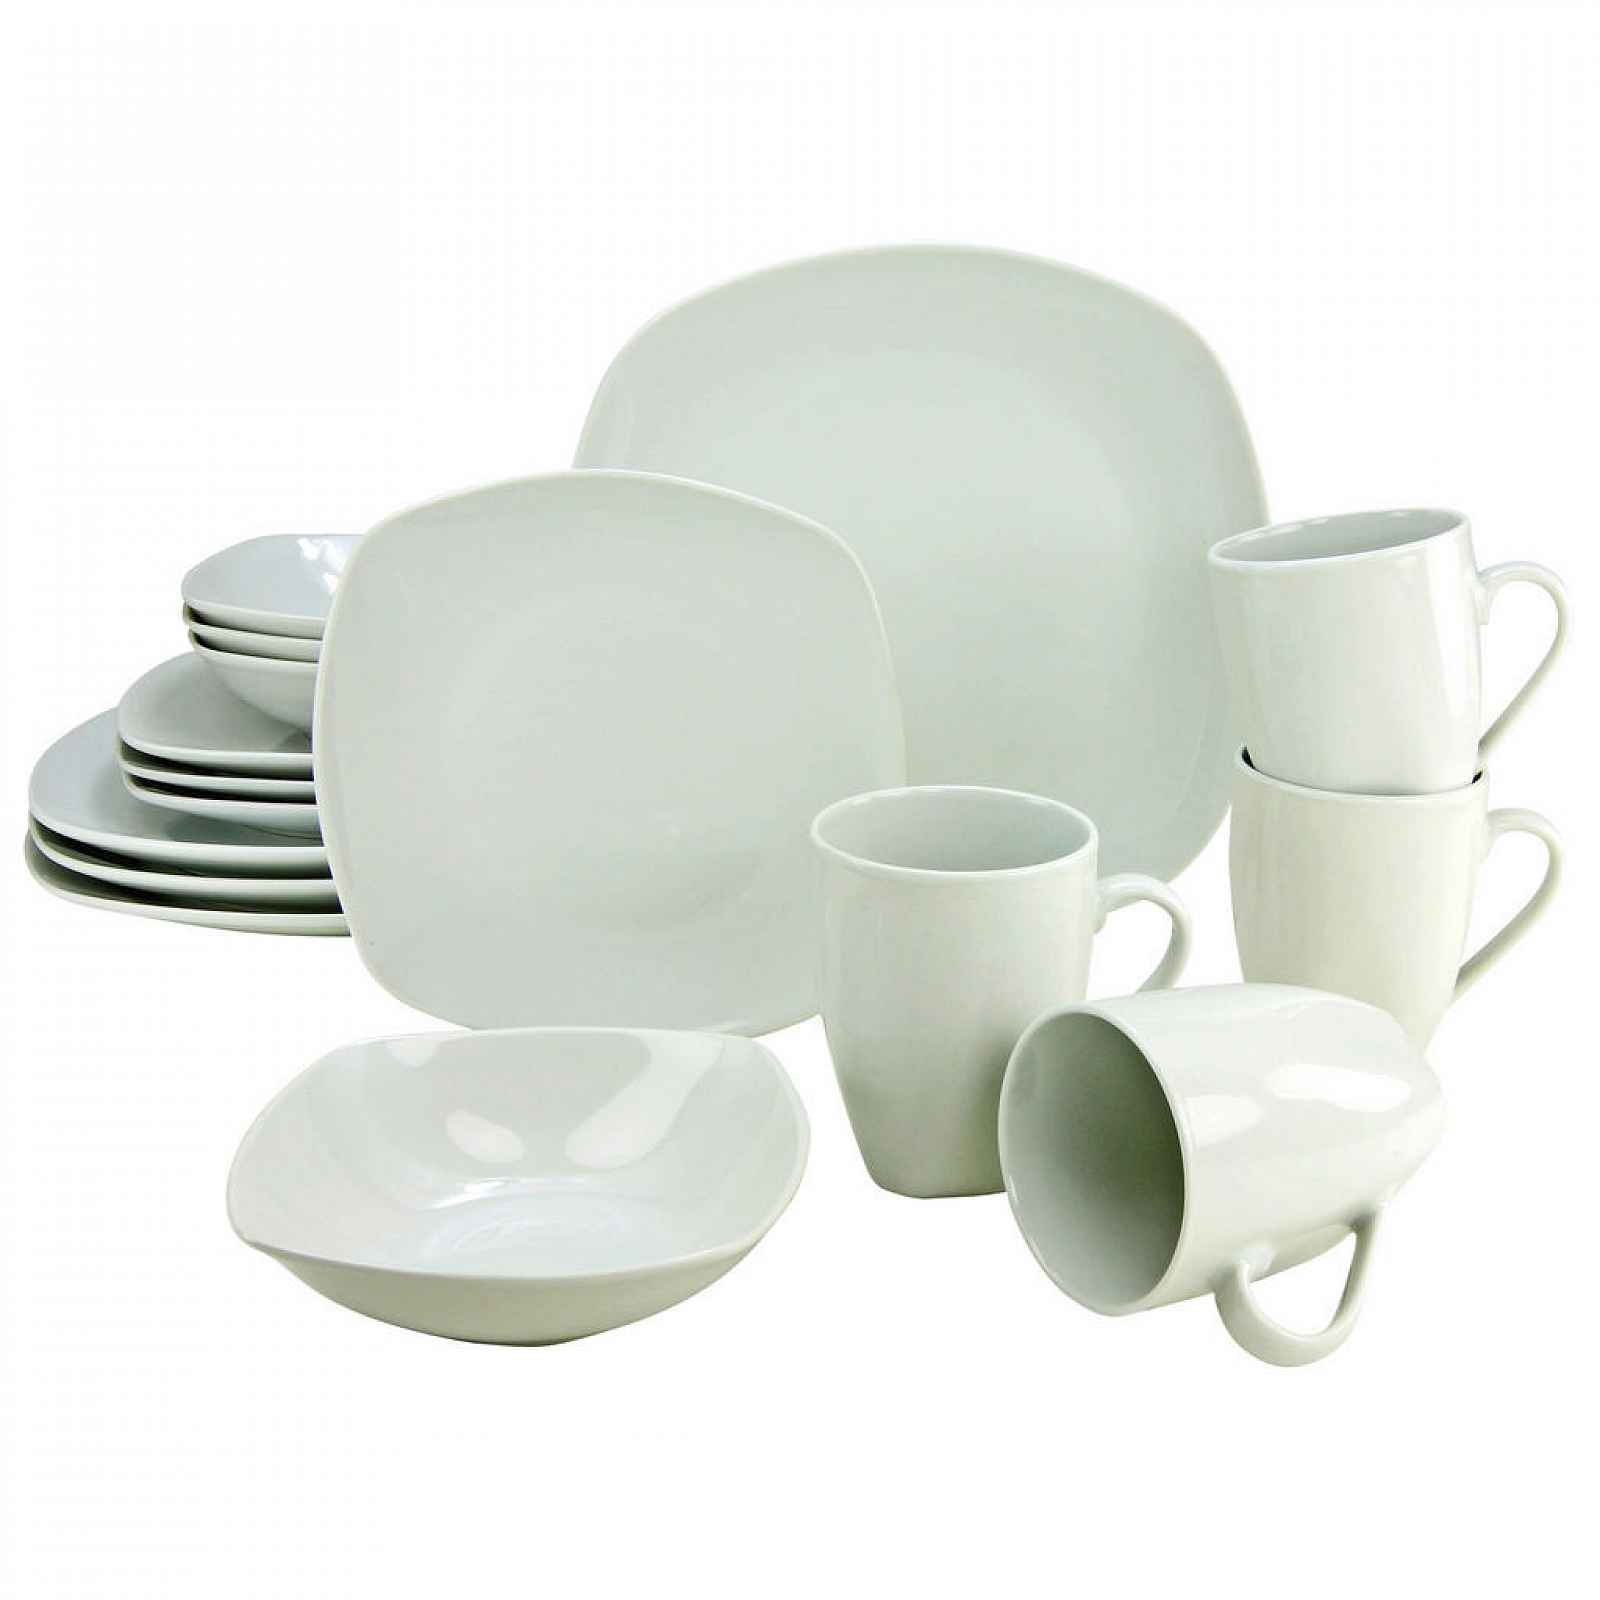 Creatable KOMBINOVANÁ SOUPRAVA, 16dílné, porcelán - Sady nádobí kombinované - 007768129201